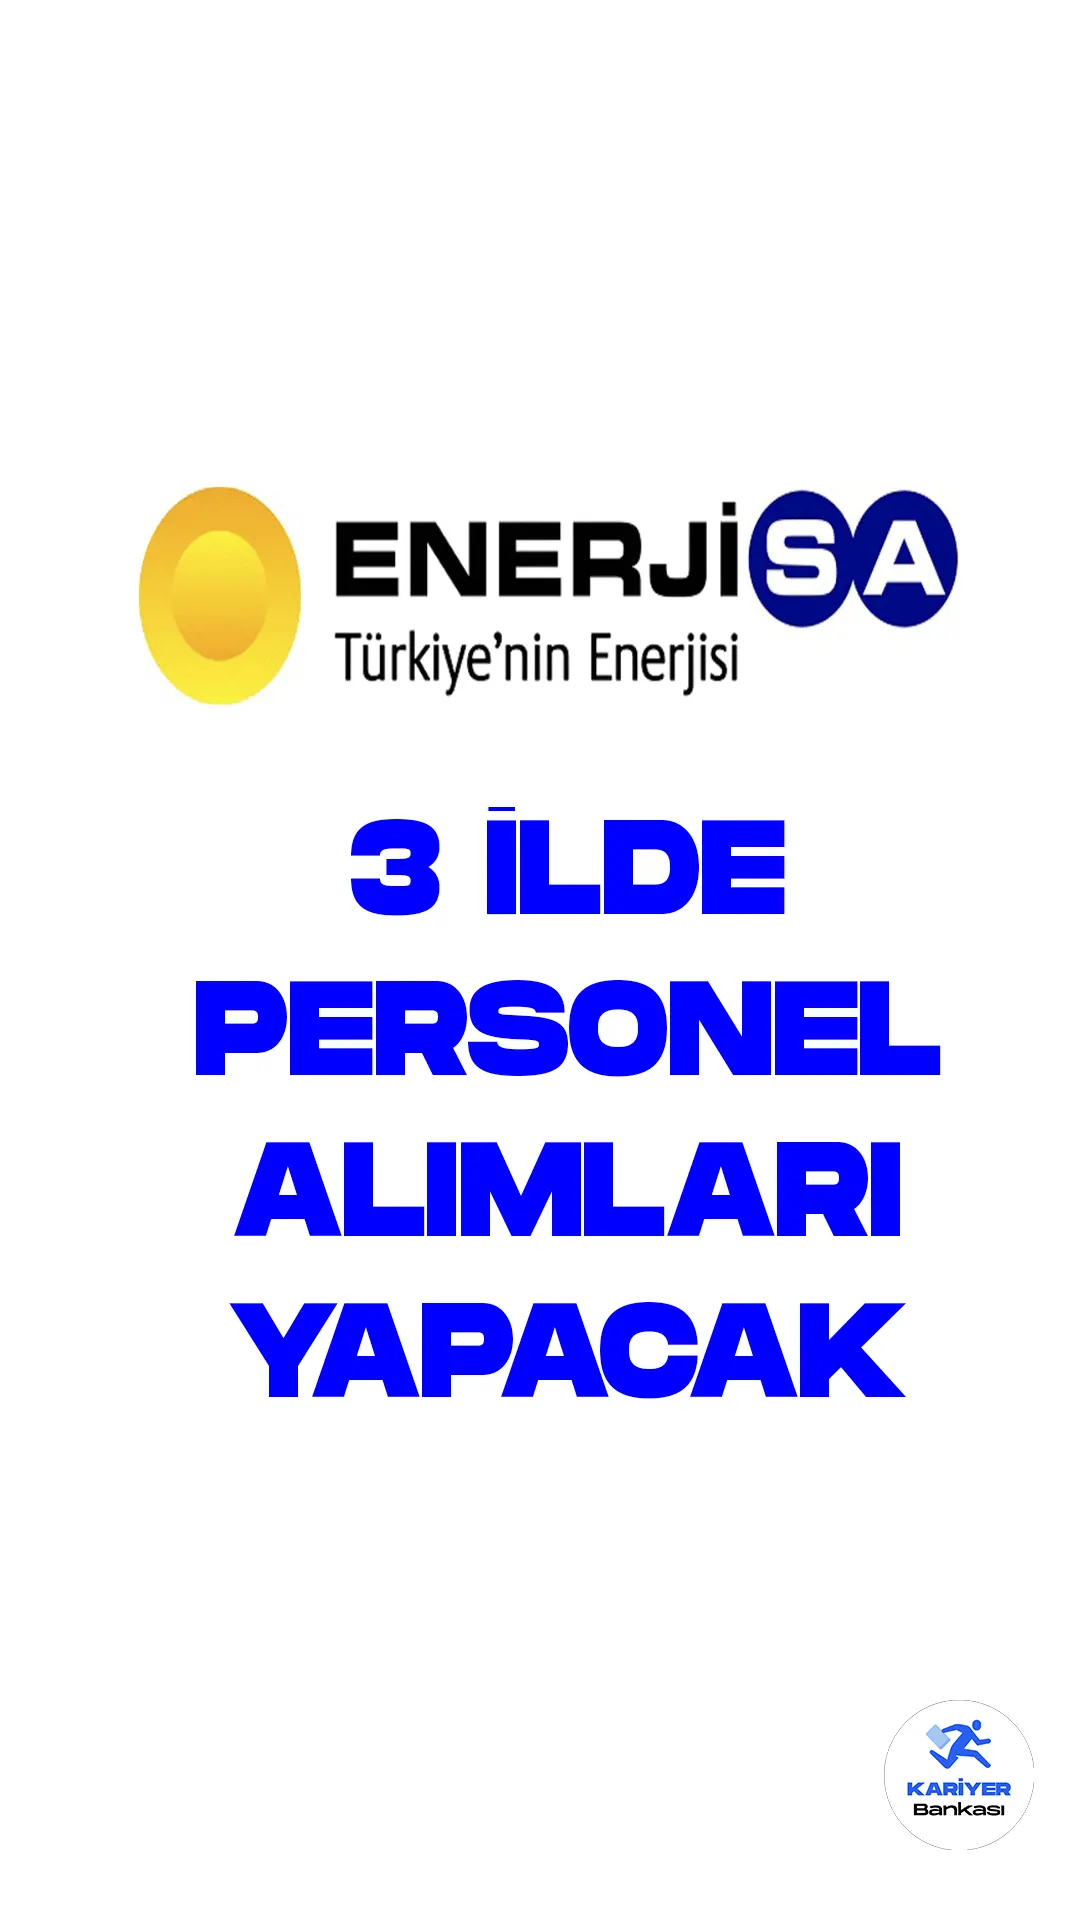 Enerjisa, Ankara, Kastamonu, Zonguldak'da personel alımı yapacağını duyurdu. Şirketin yayımladığı personel alımı duyurularına göre, farklı pozisyonlarda açık pozisyonlar bulunuyor.